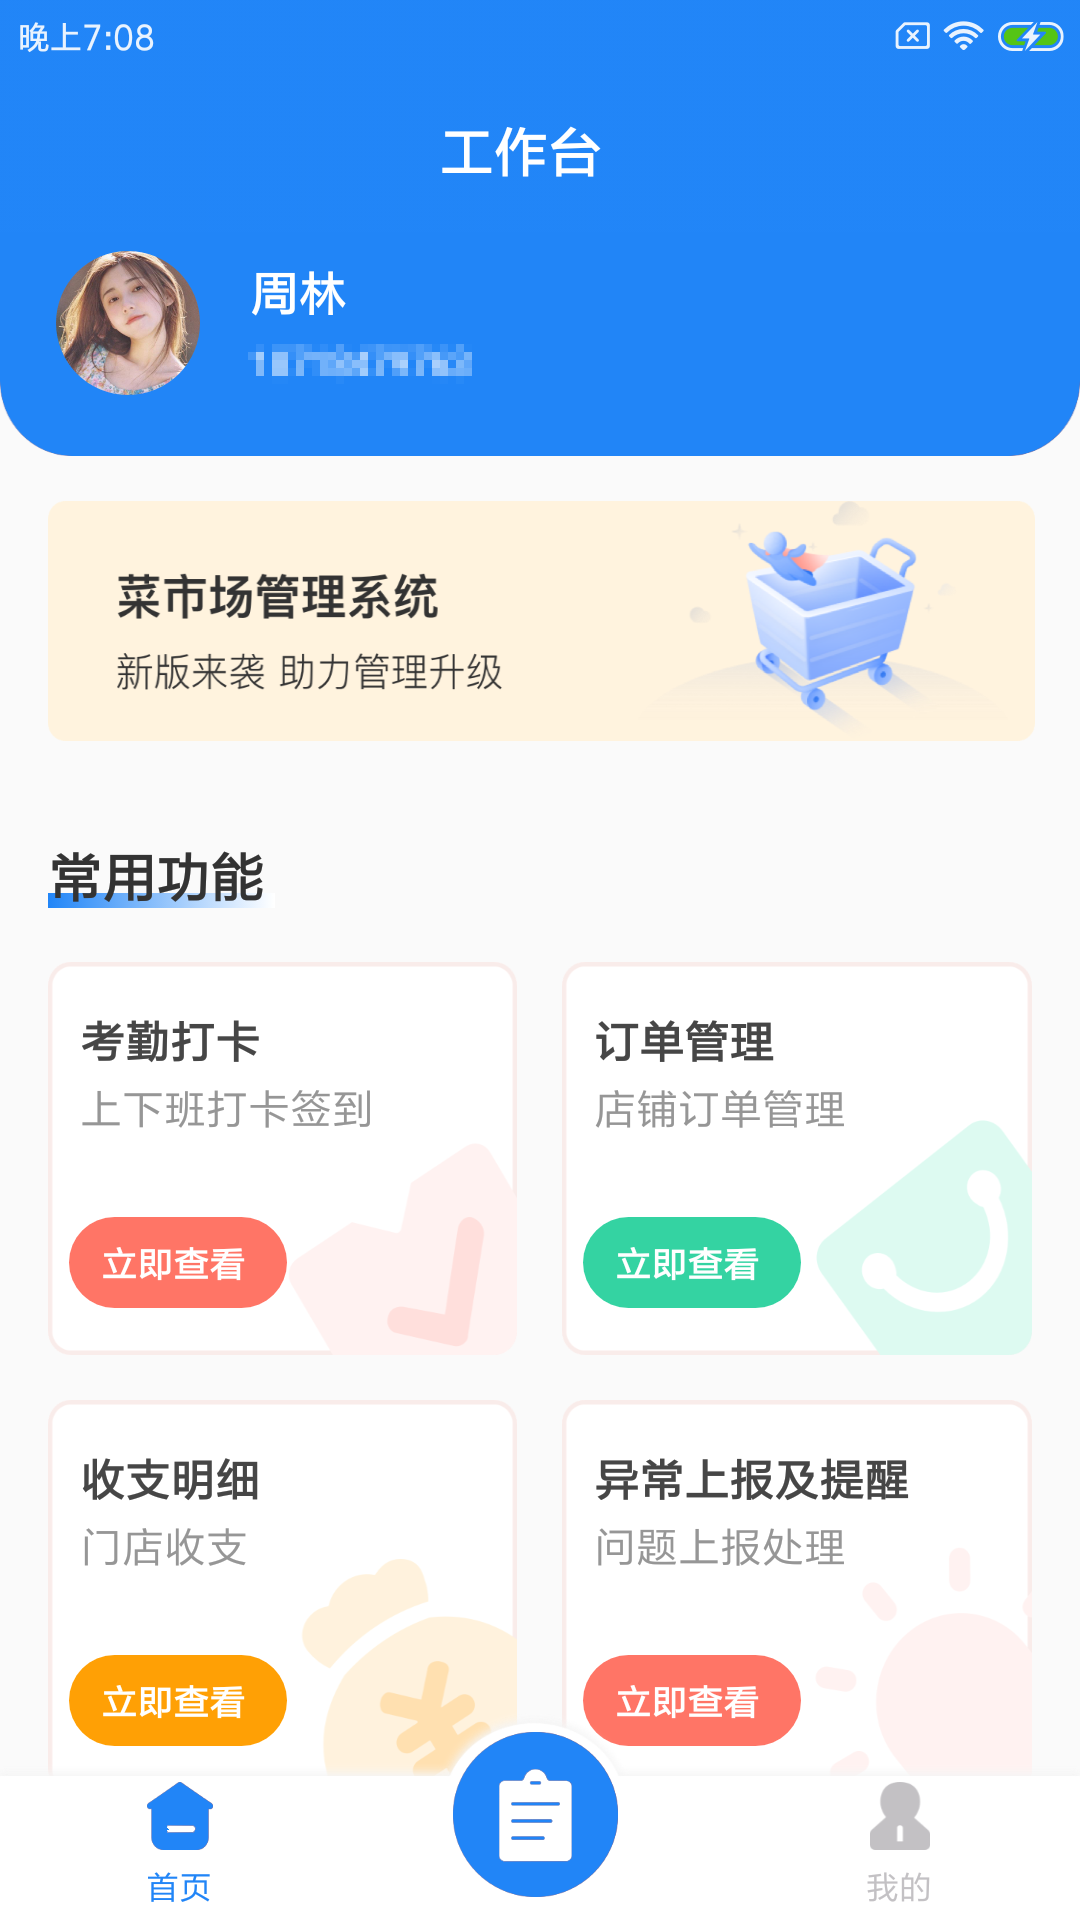 迎蔬店管云生鲜商家管理app官方版2